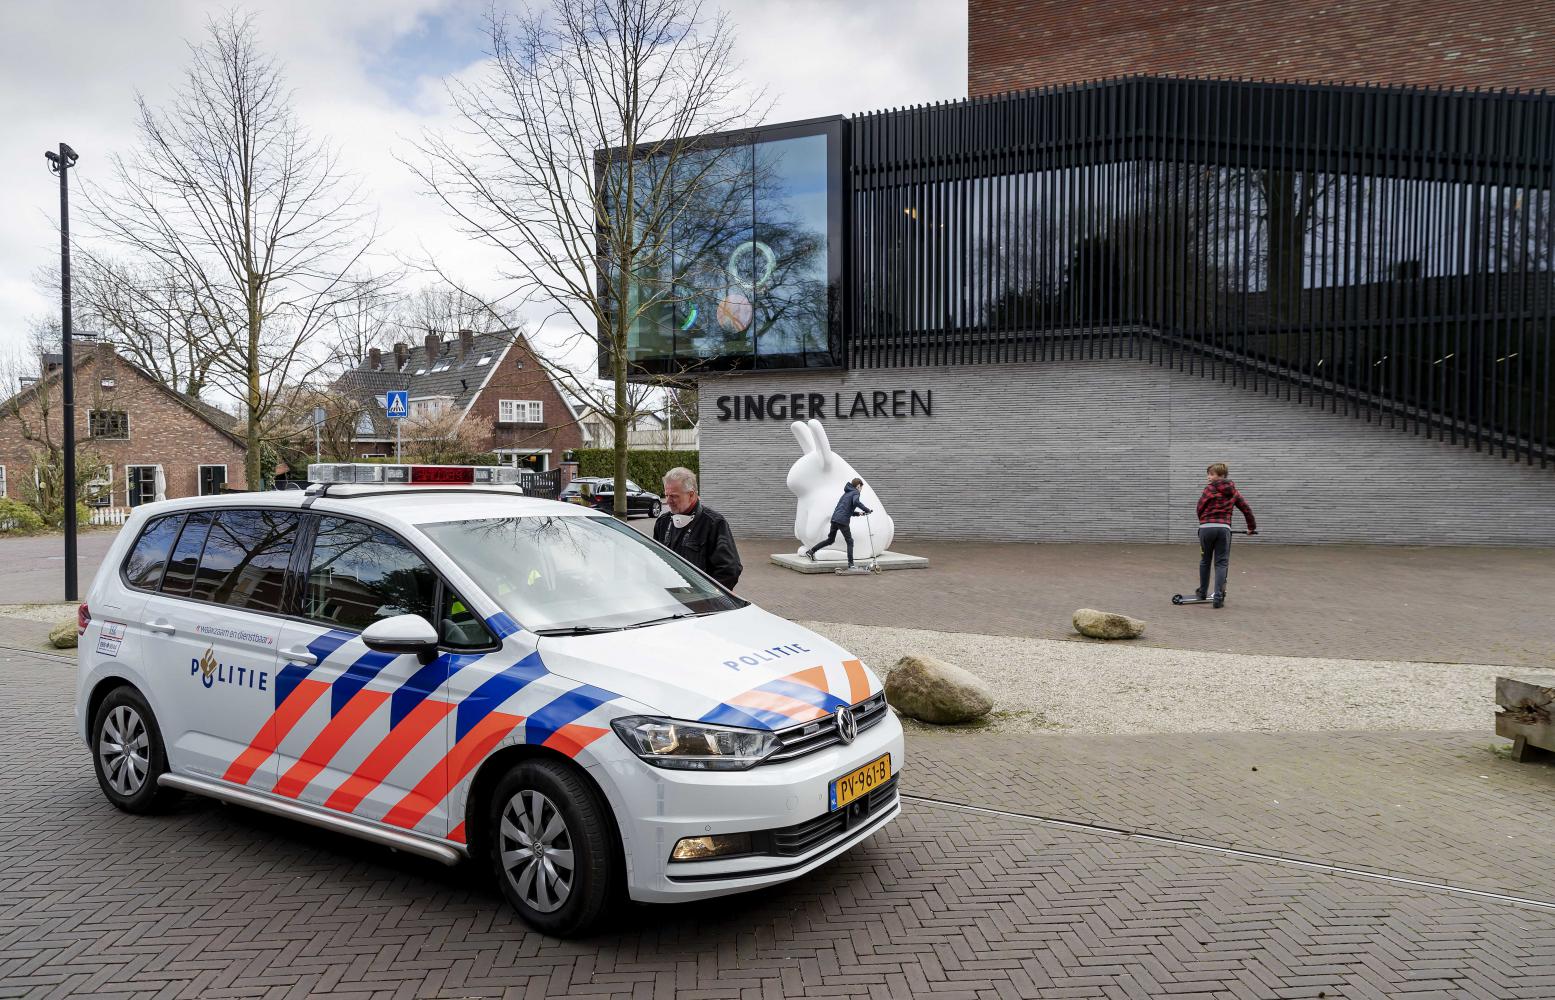  Polizei vor dem Museum Singer Laren